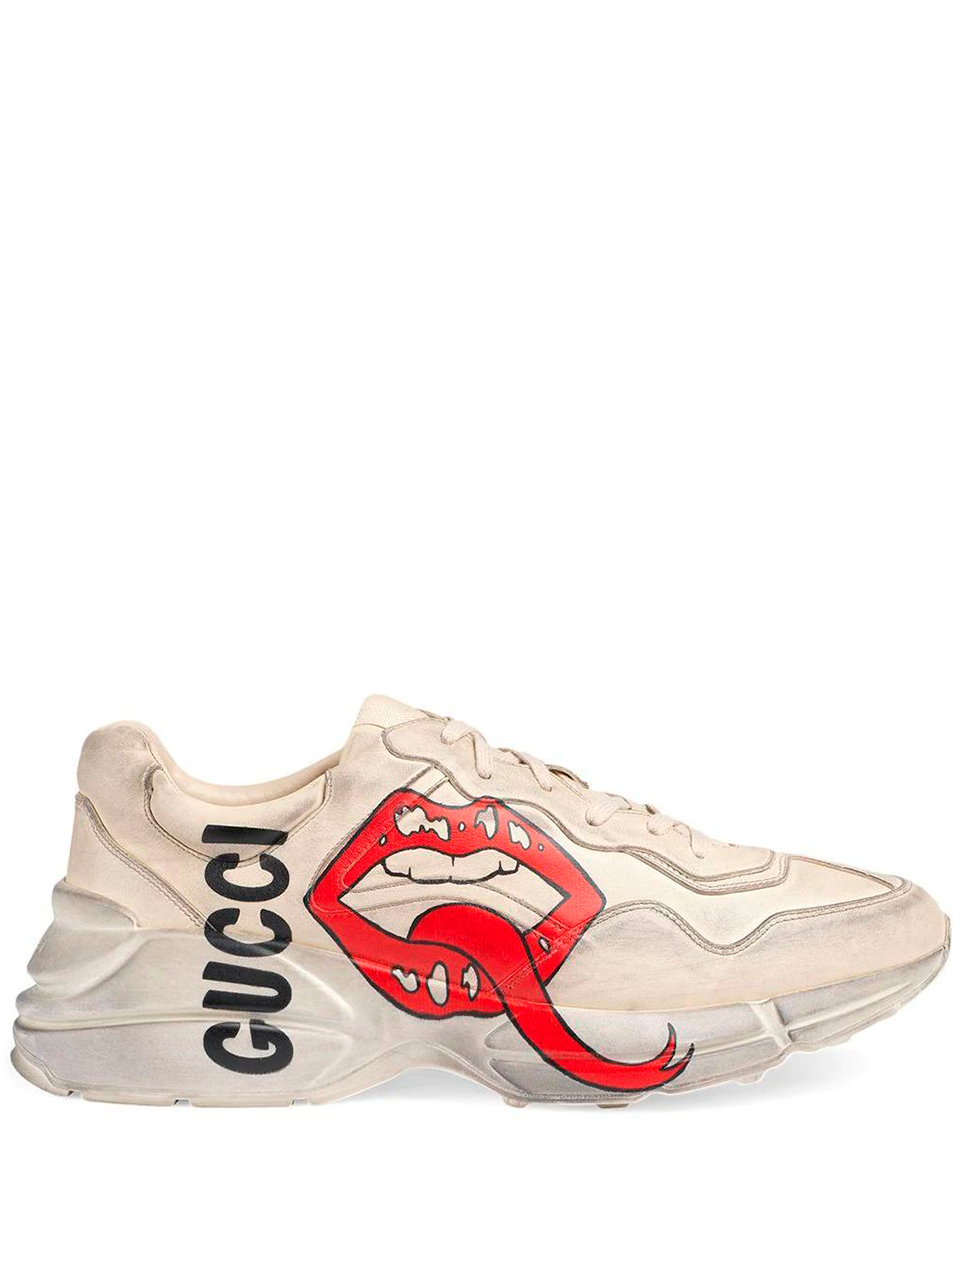 Imagem de: Tênis Gucci Rhyton com Logo de Boca